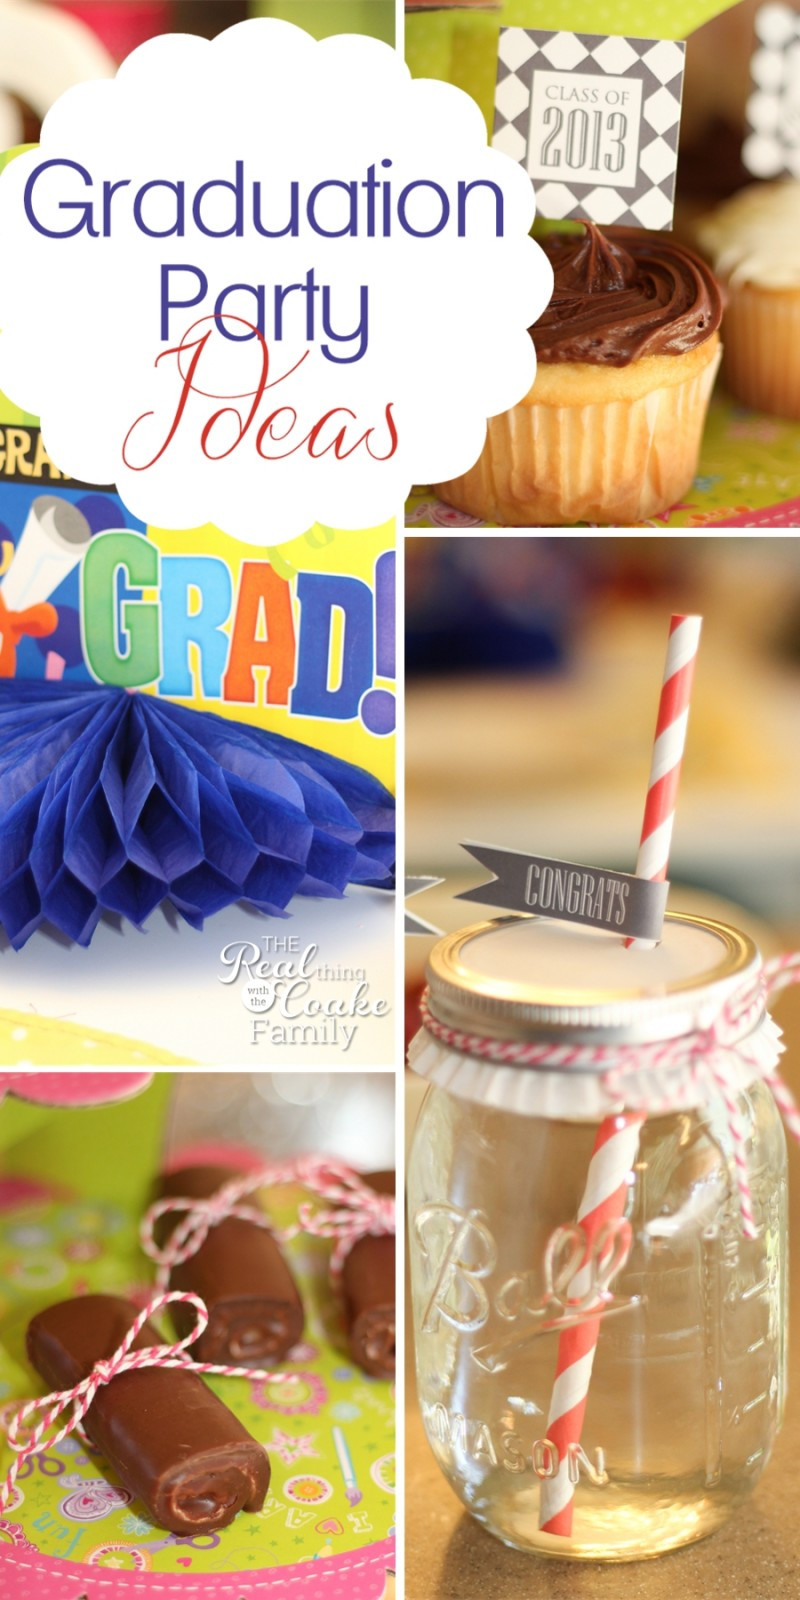 Middle School Graduation Party Ideas
 Quick Easy and Cute Graduation Party Ideas